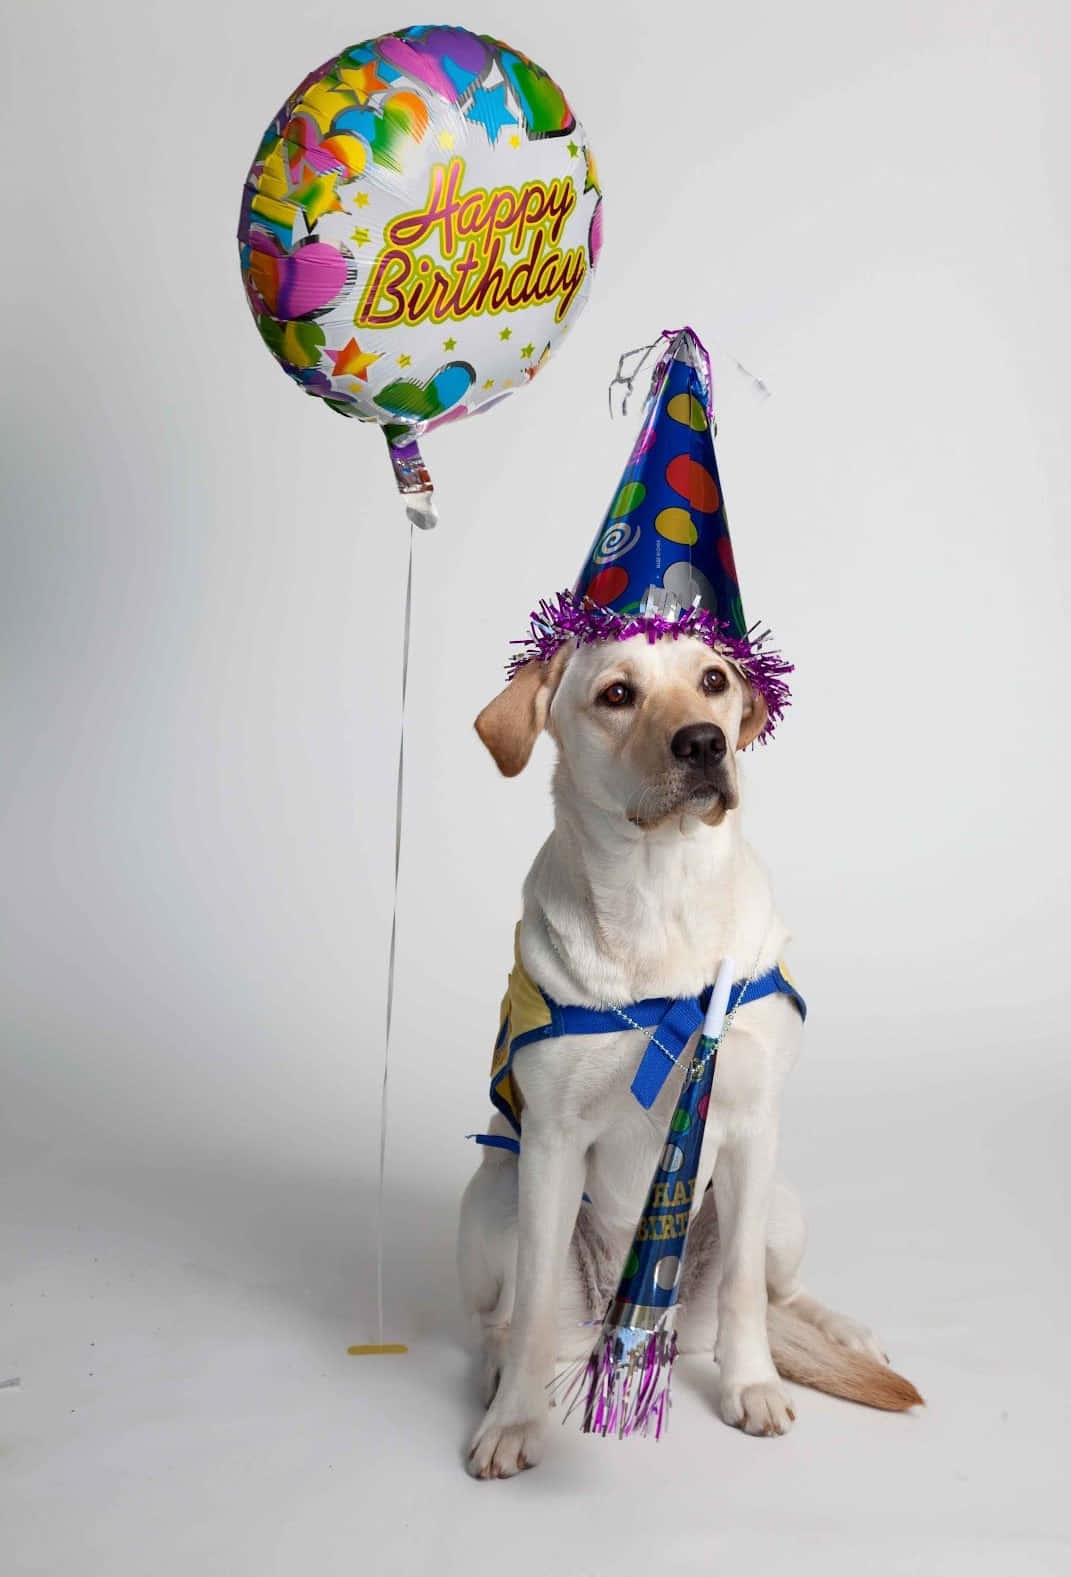 Imagende Un Perro Labrador Sonriente En Una Fiesta De Cumpleaños Con Globos